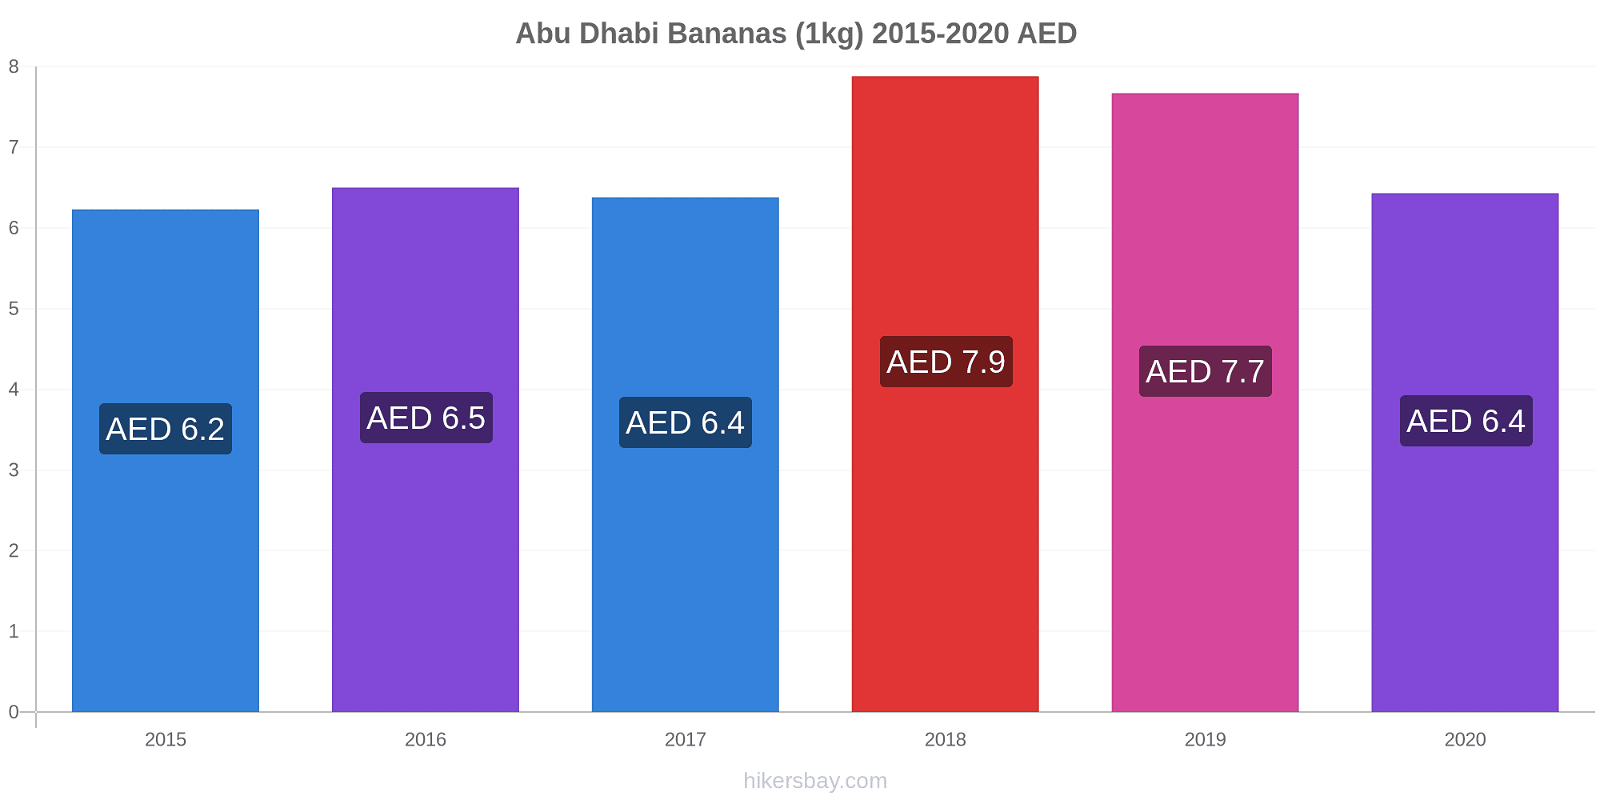 Abu Dhabi variação de preço Banana (1kg) hikersbay.com